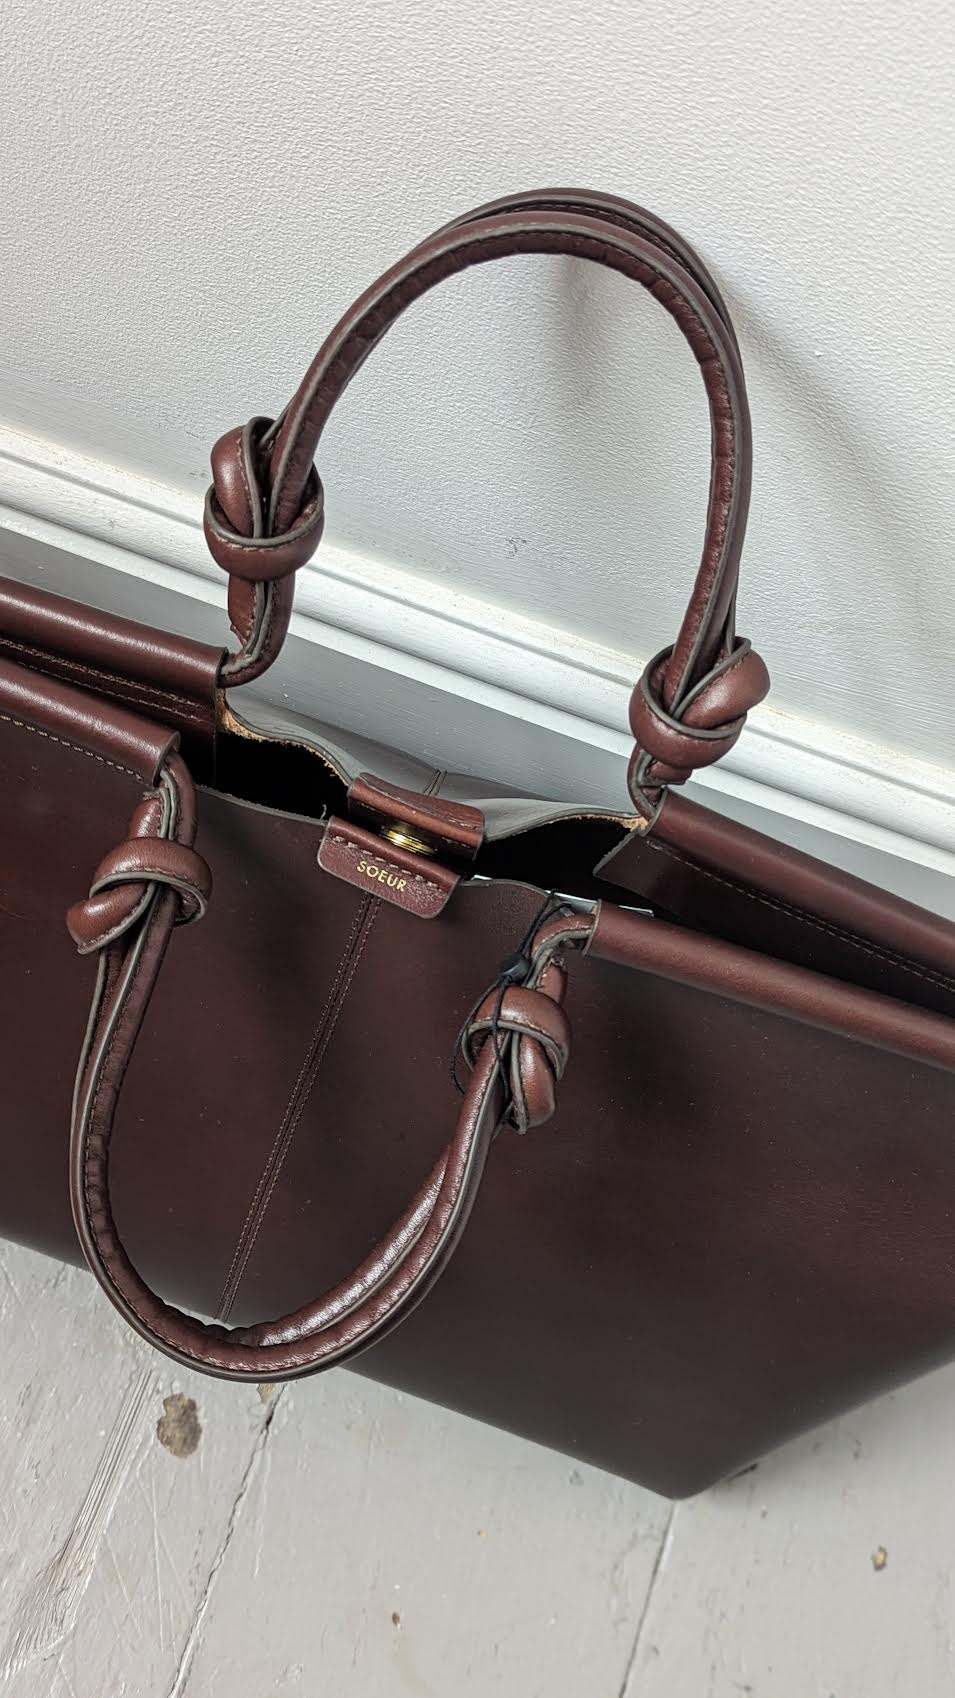 Soeur - Amalfi Marron Leather Weekend Bag - Image 2